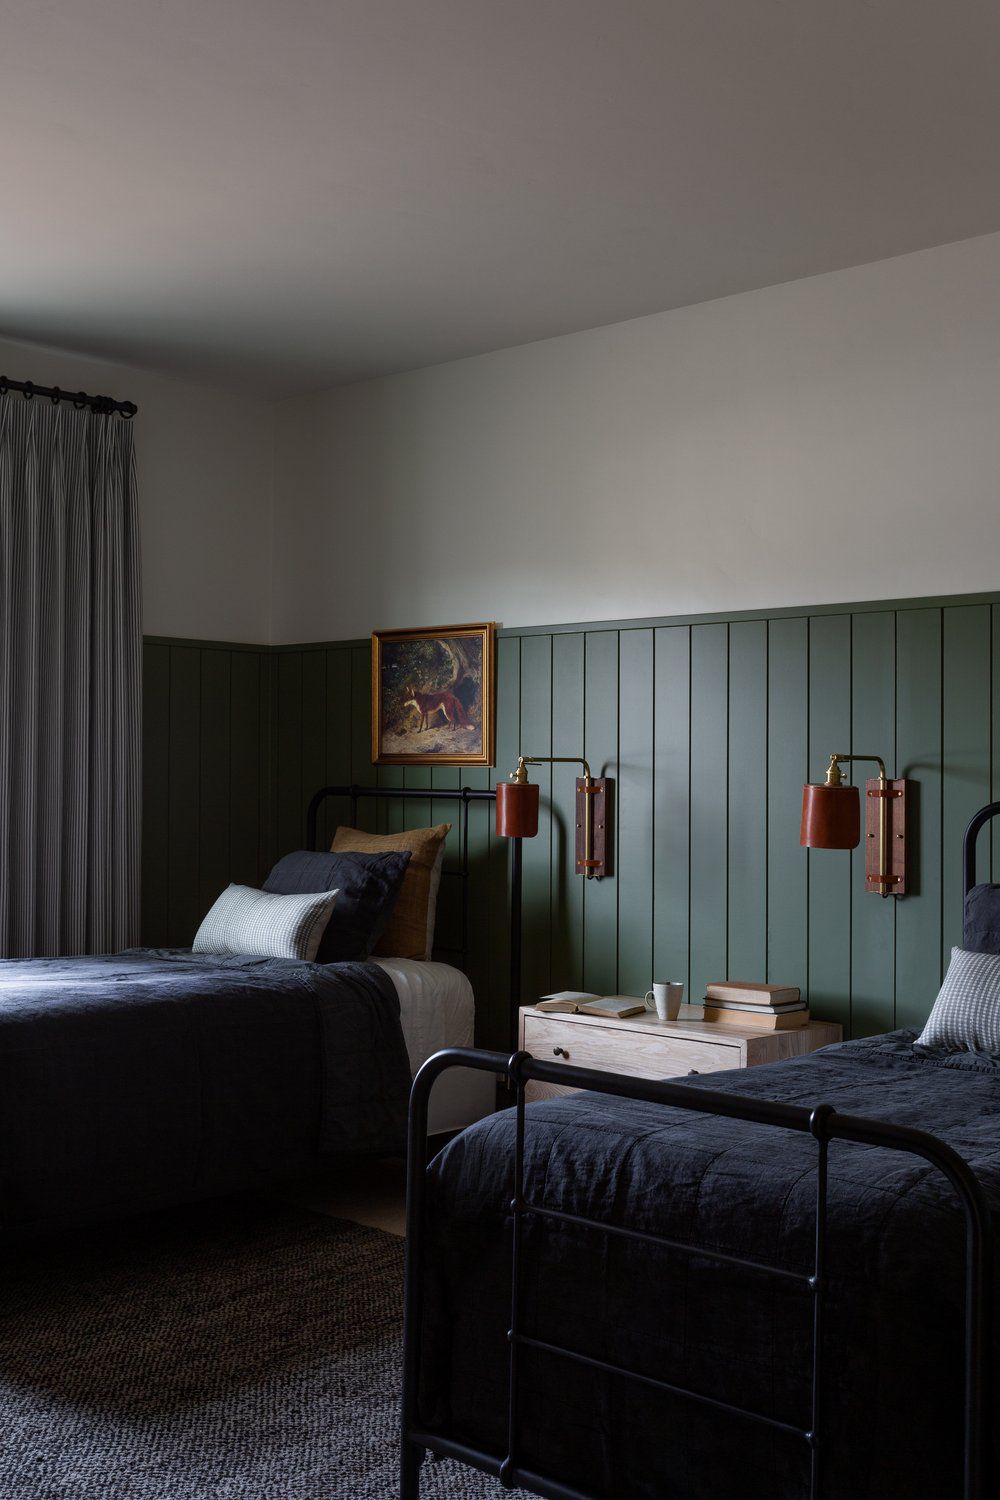 Painéis de parede verde-escuro em um quarto com duas camas de solteiro